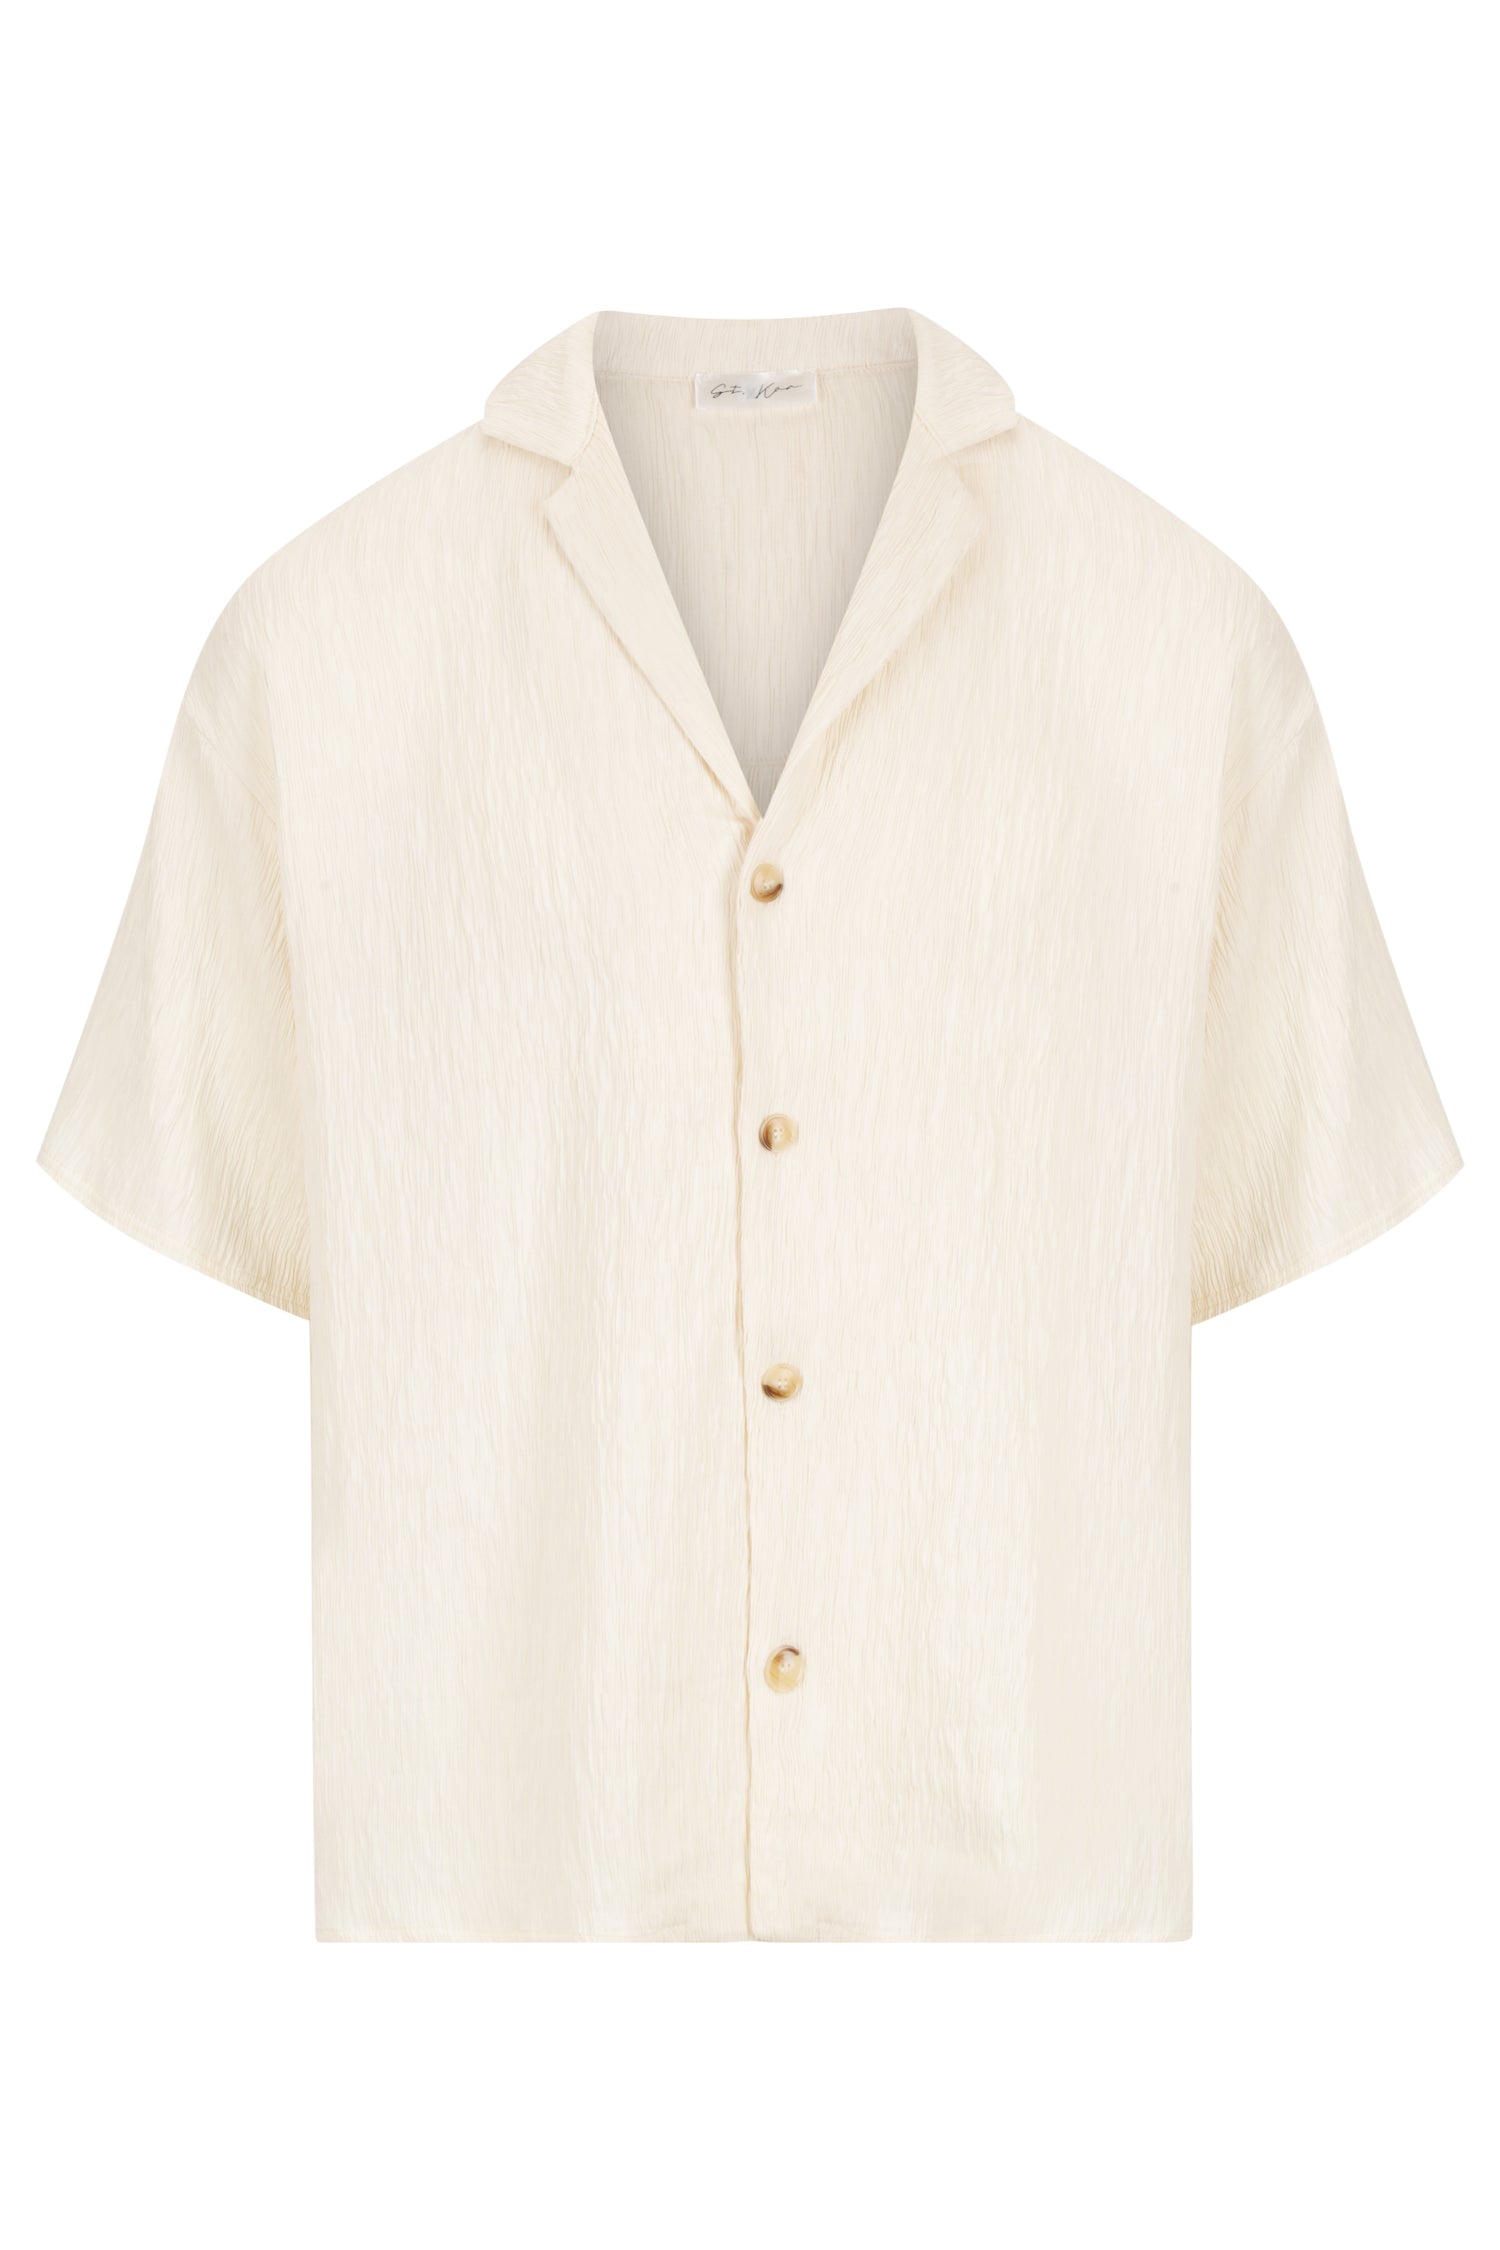 Beige Textured Shirt – ST. KOA